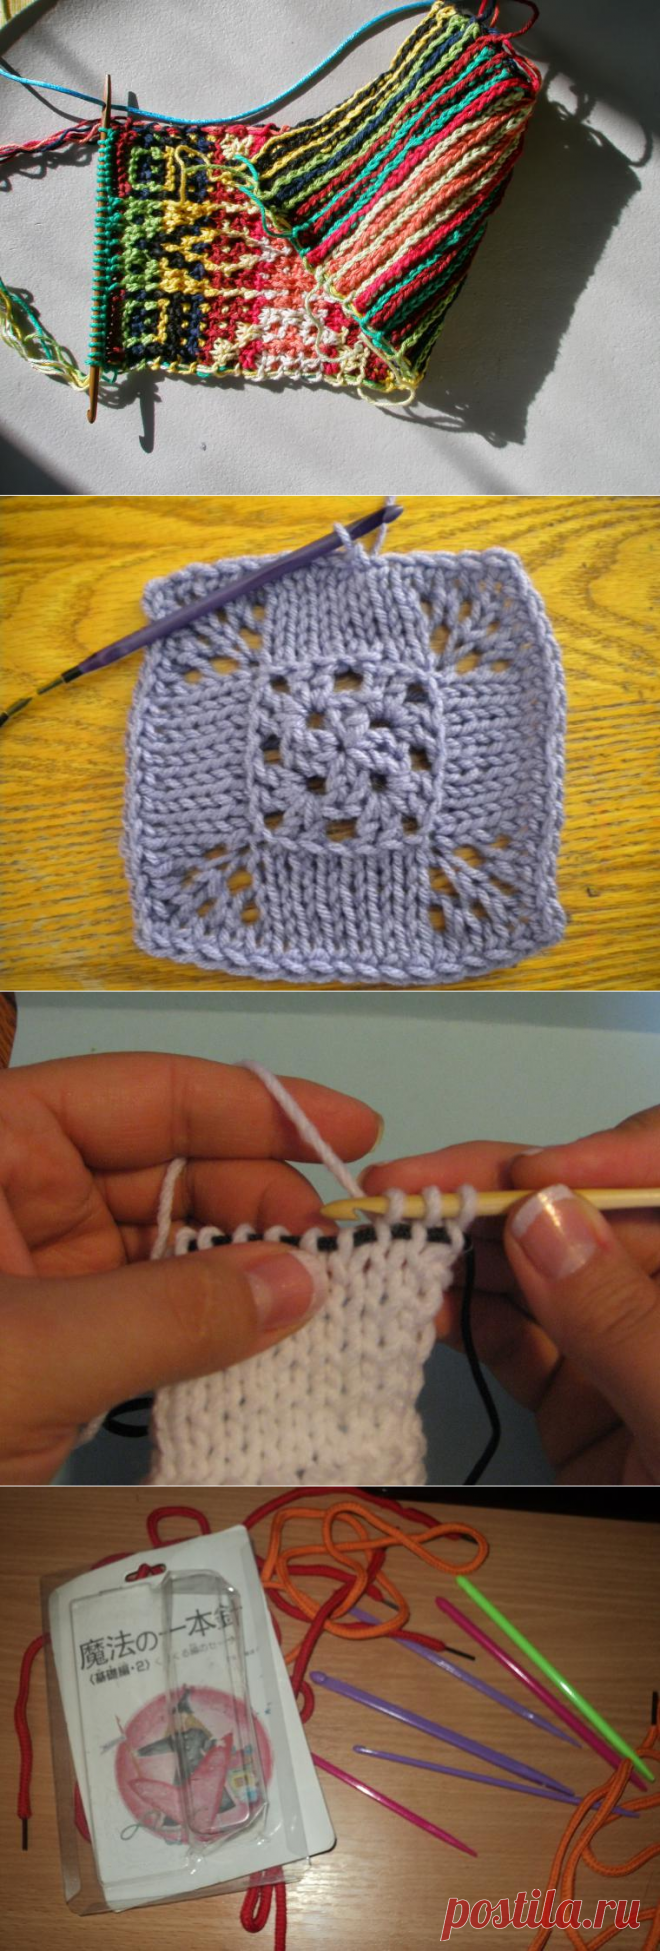 Нукинг: три в одном, или Новая техника вязания